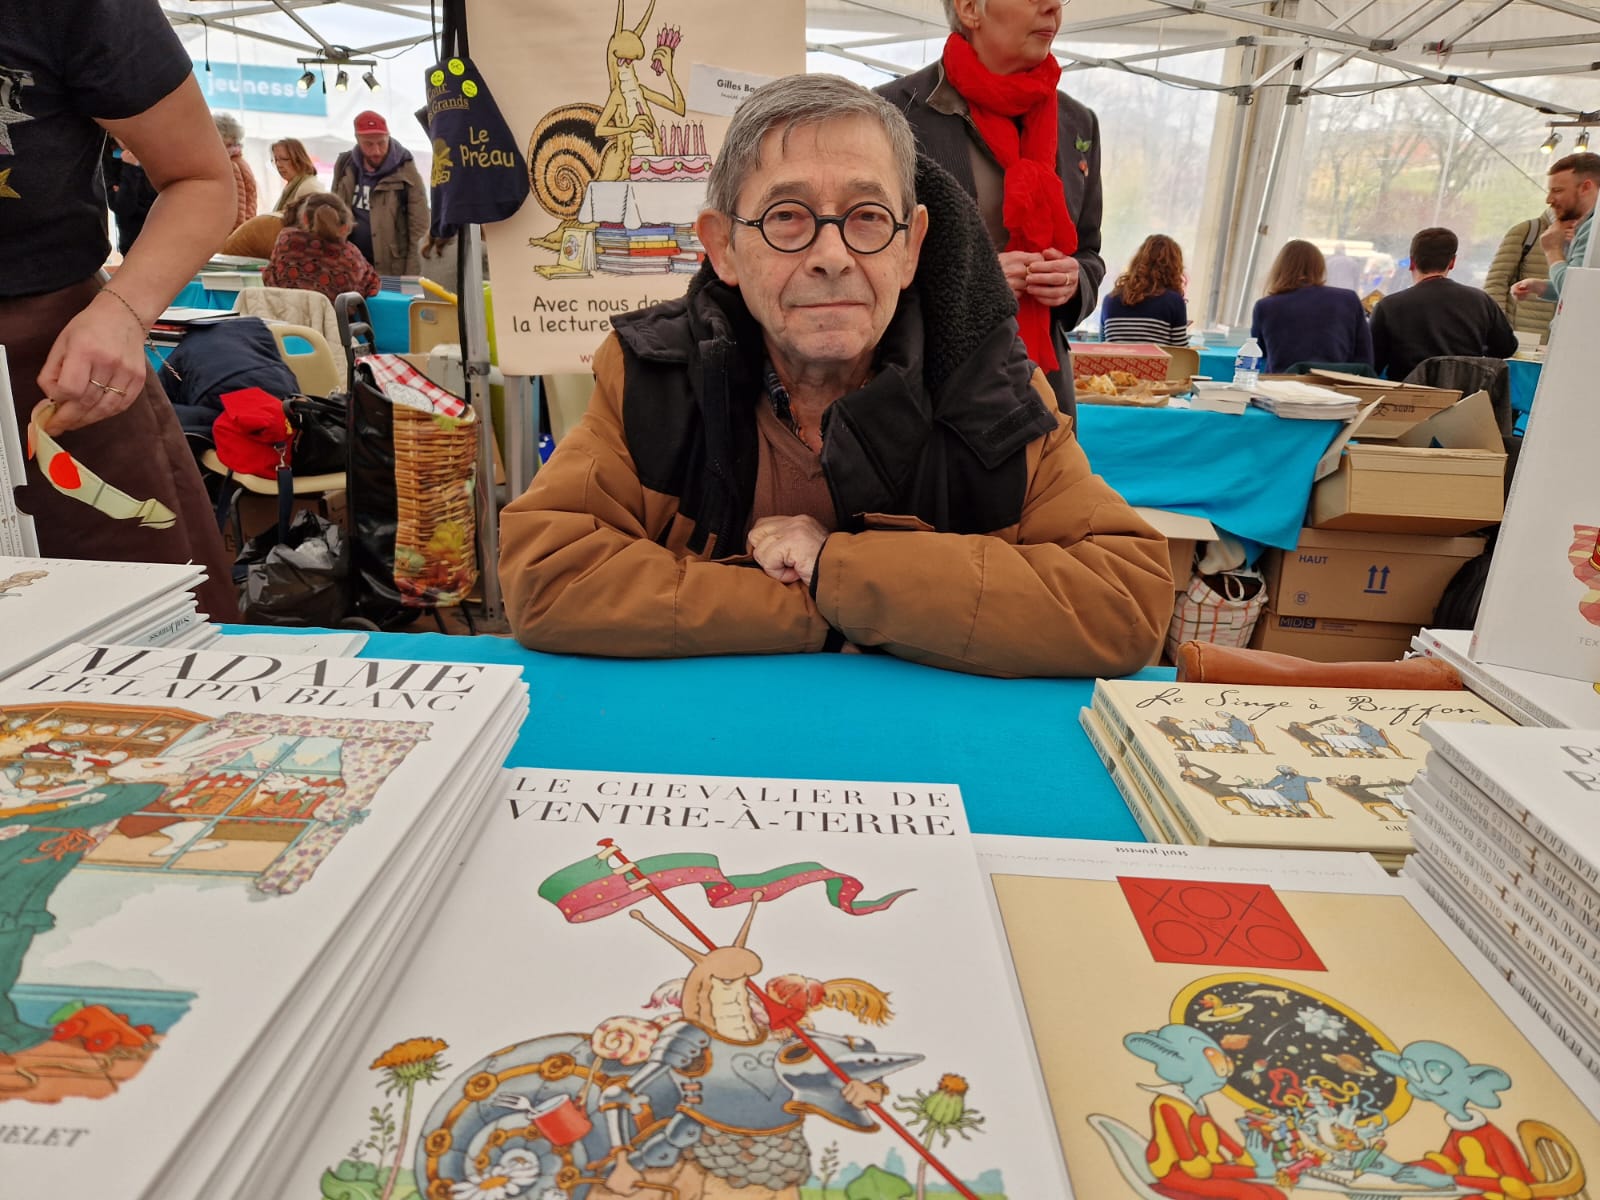 Gilles Bachelet. Livre à Metz. ActuaLitté (CC BY-SA 2.0)